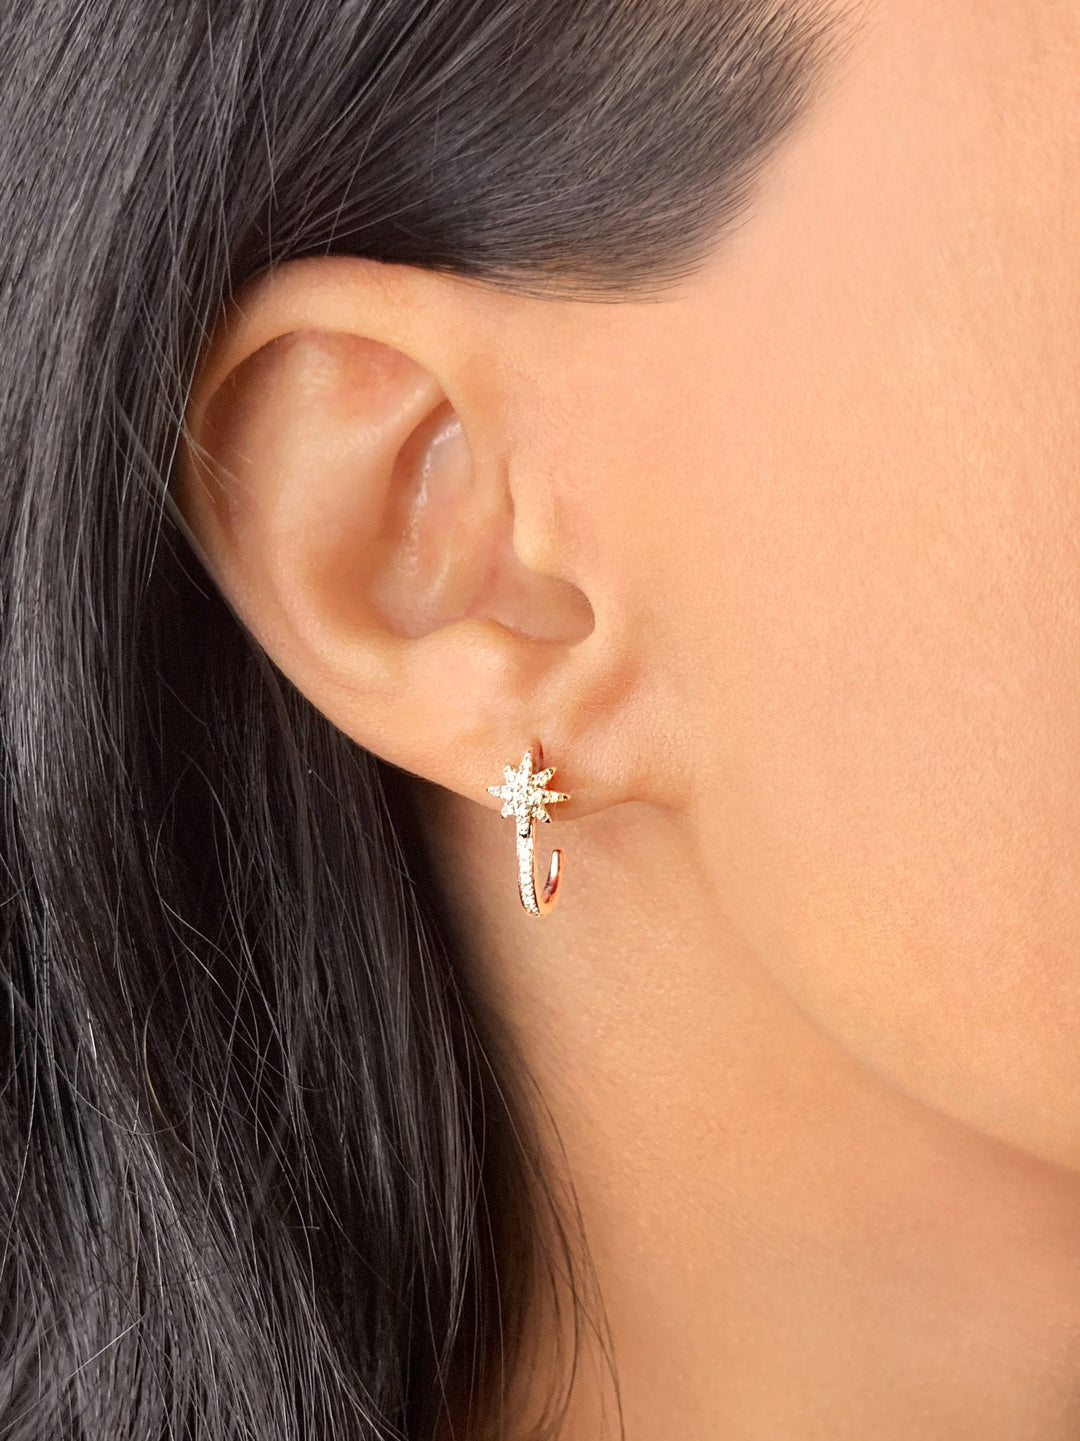 North Star Diamond Earrings in 14K White Gold